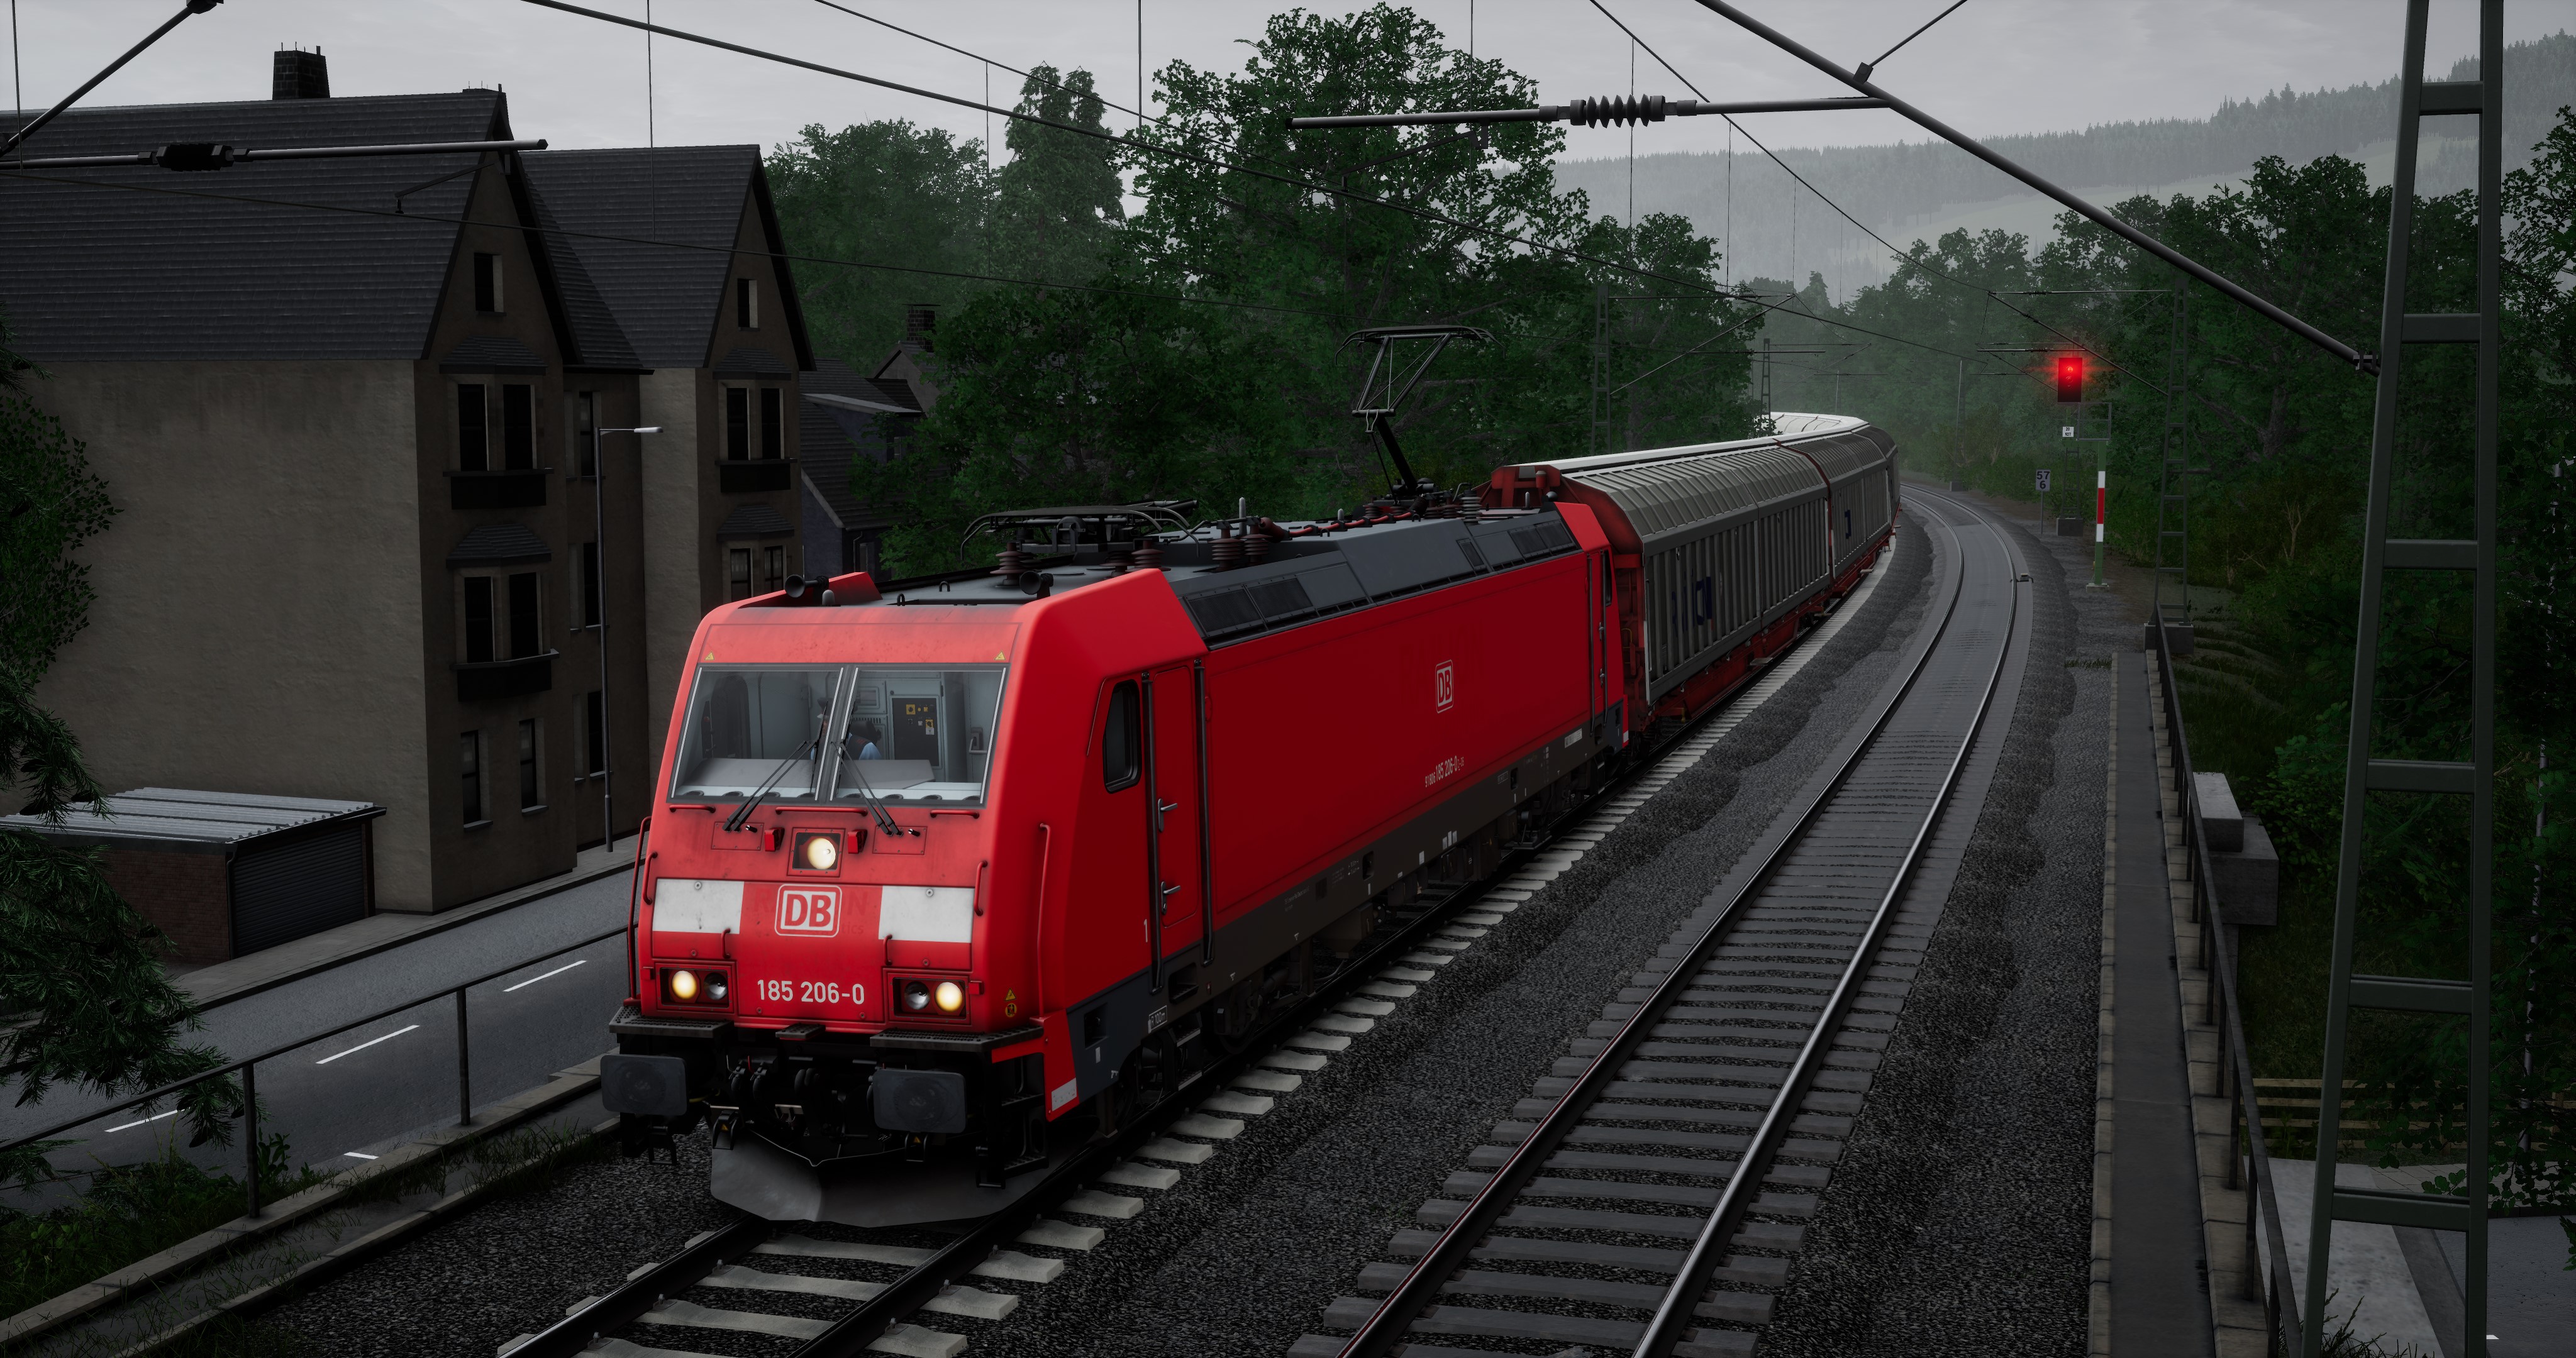 Train Sim World®: Ruhr-Sieg Nord: Hagen - Finnentrop Route Add-On